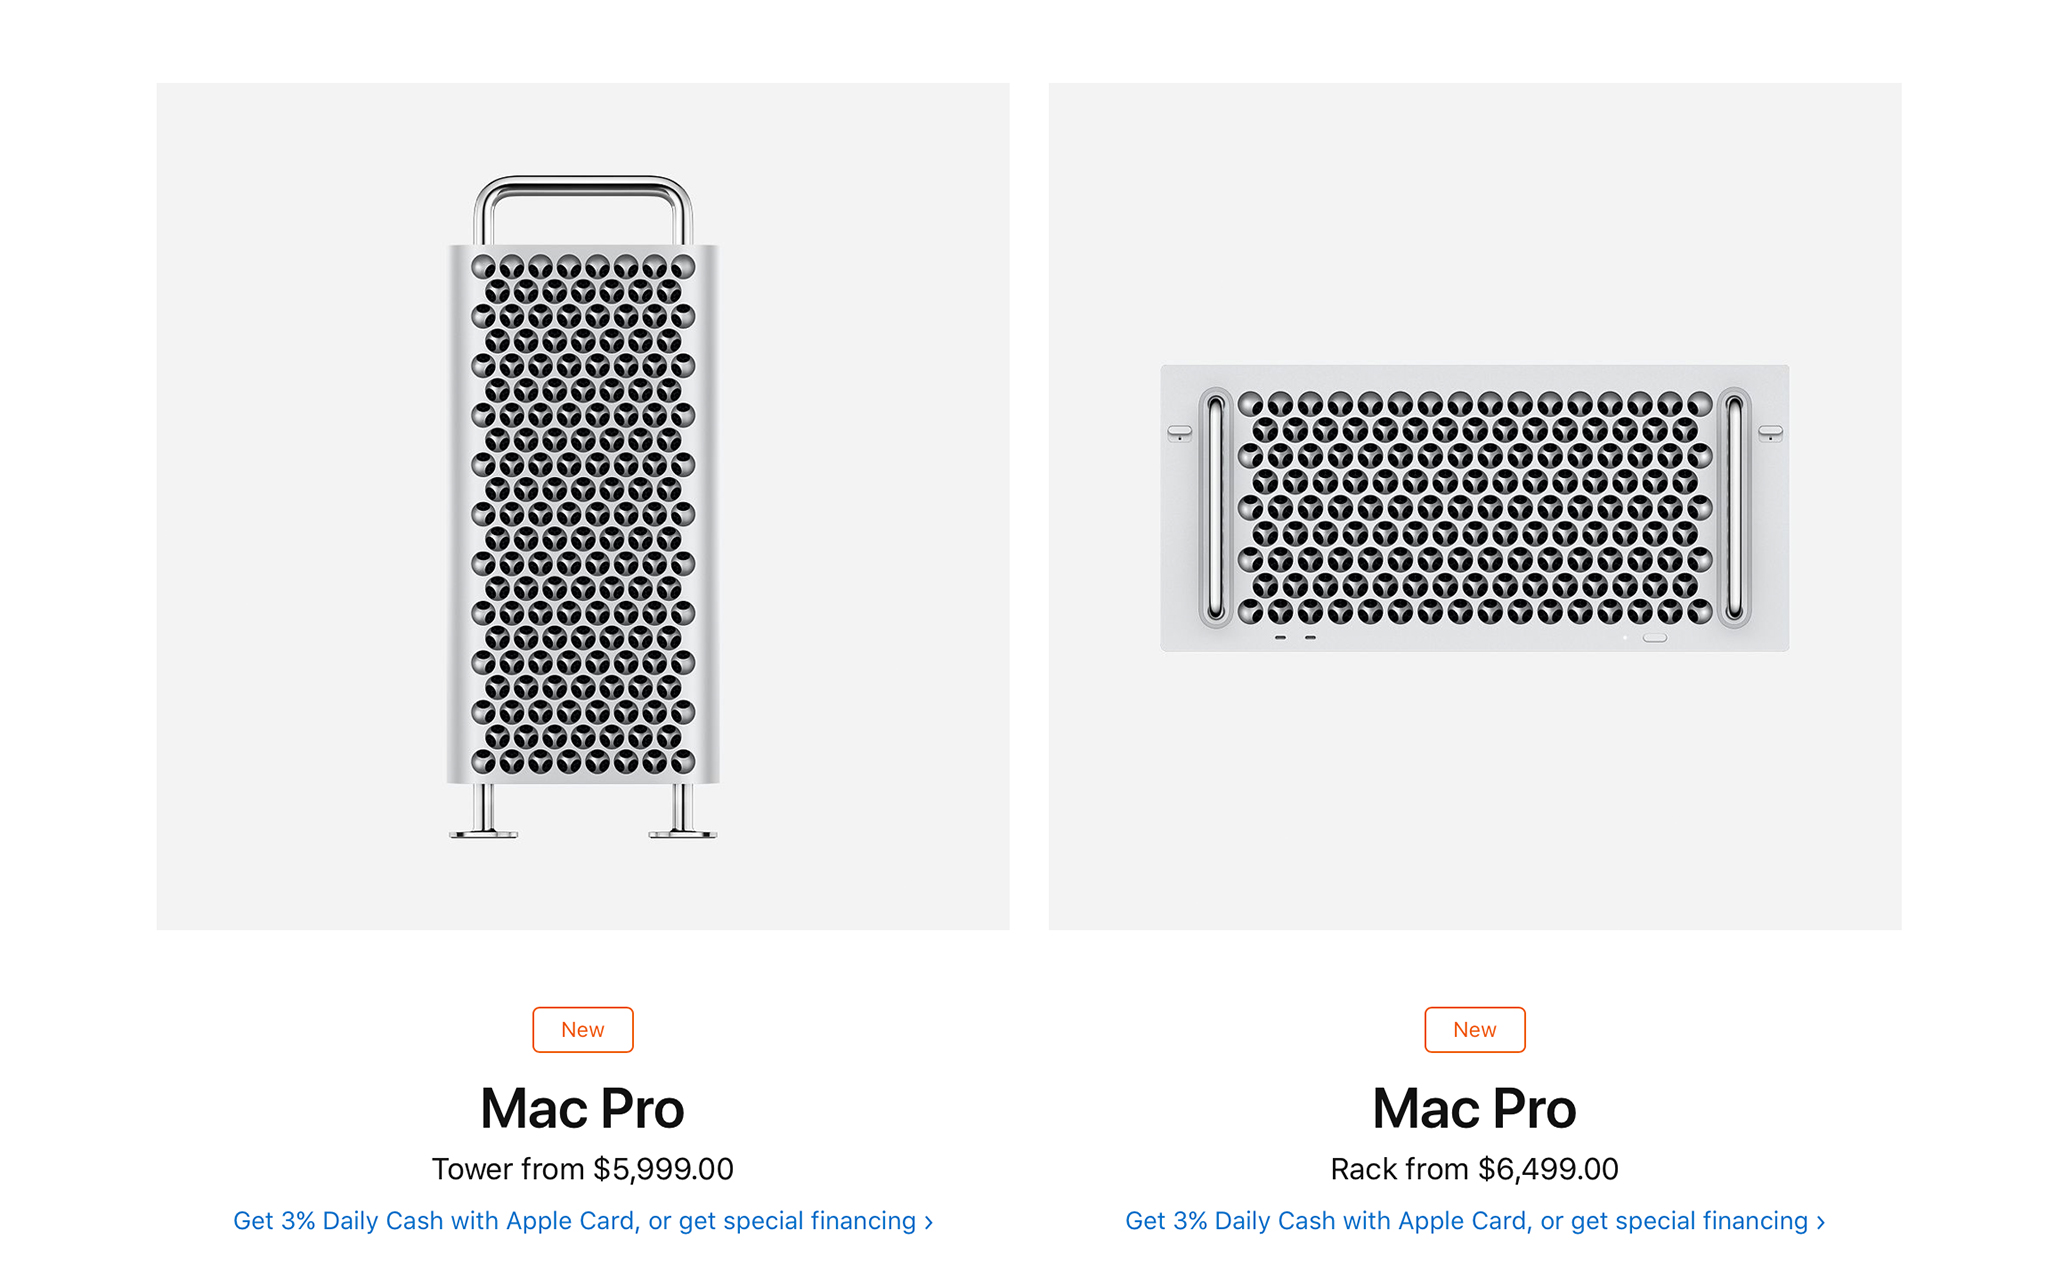 Apple bắt đầu bán Mac Pro bản Rack-mounted: Đắt hơn 500 USD so với bản Tower